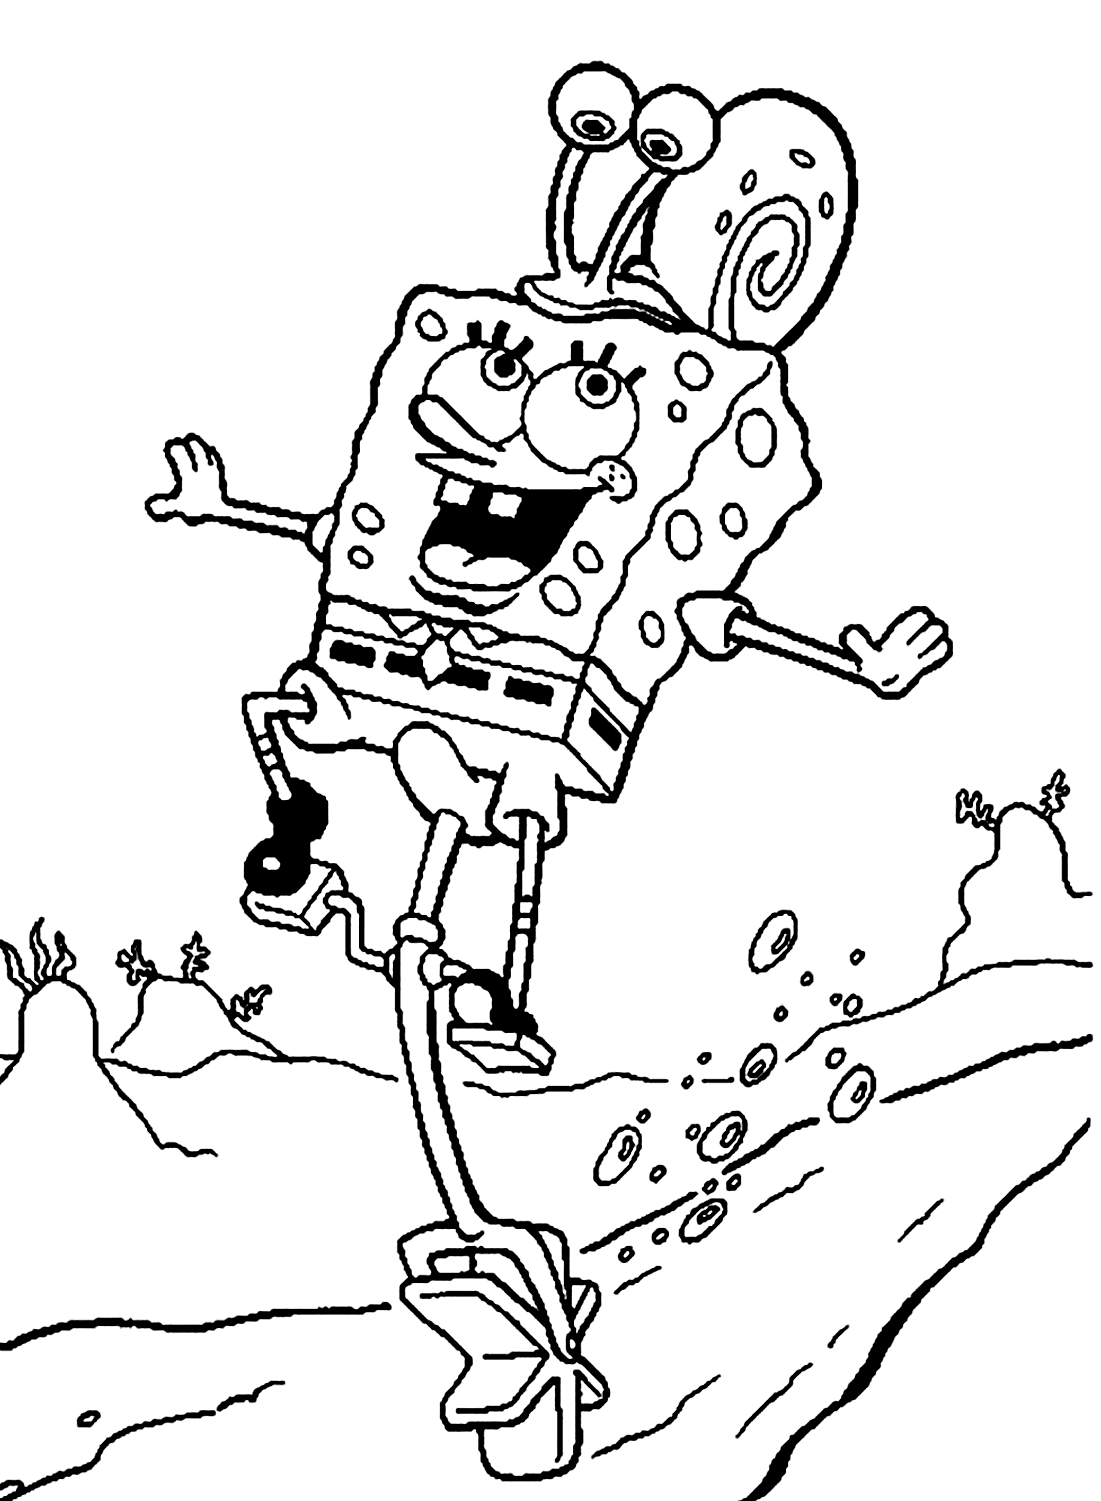 Spongebob gioca con il foglio colorato della lumaca di Spongebob